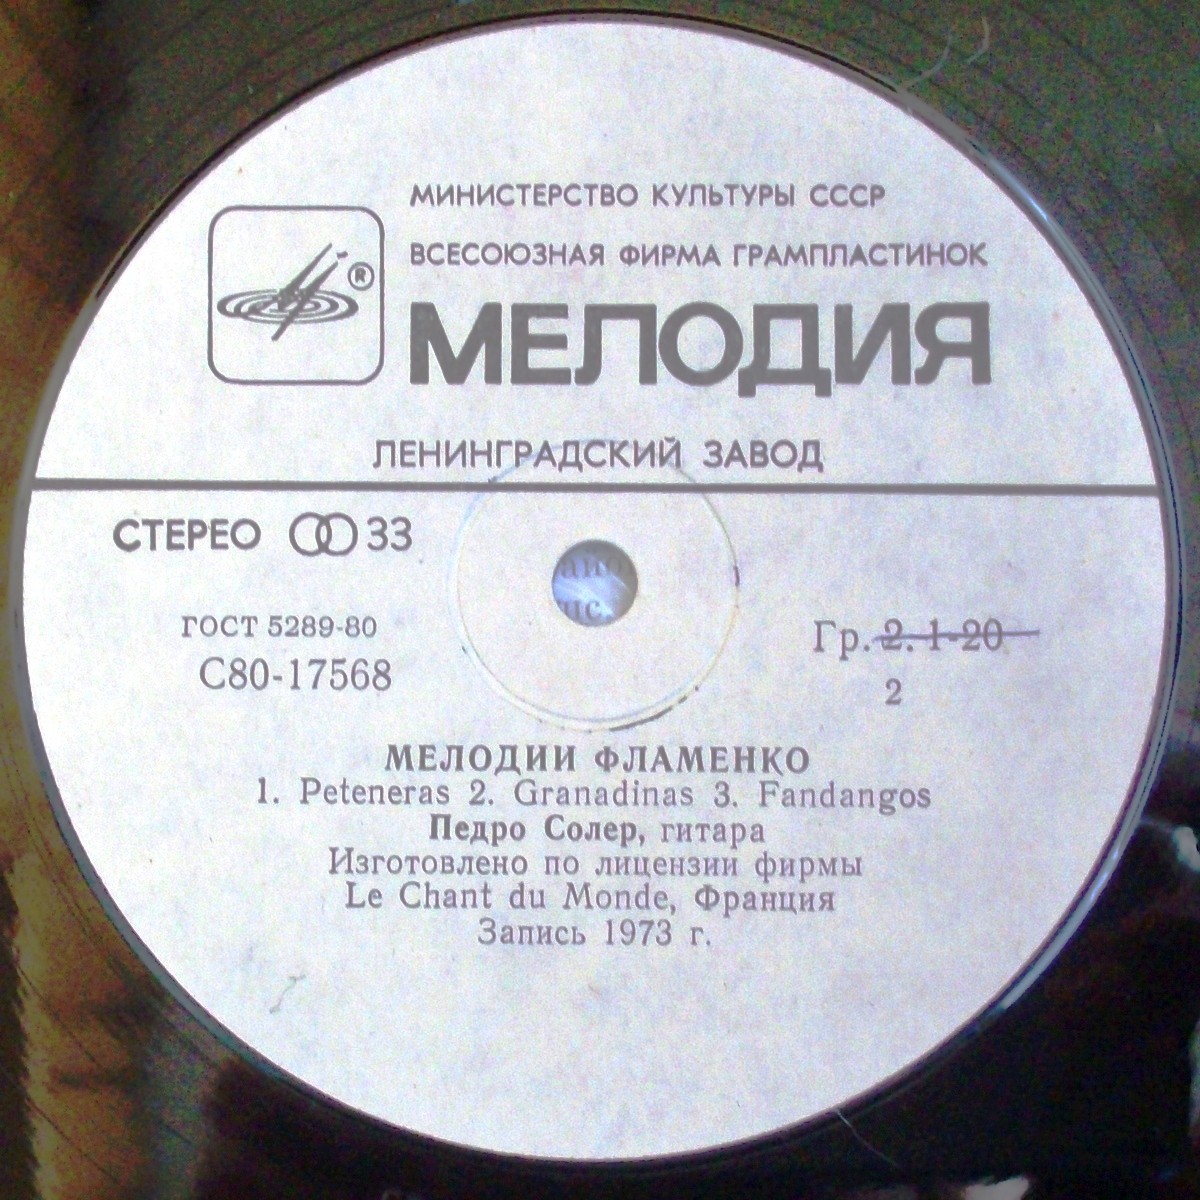 Педро СОЛЕР, гитара. "Мелодии Фламенко"